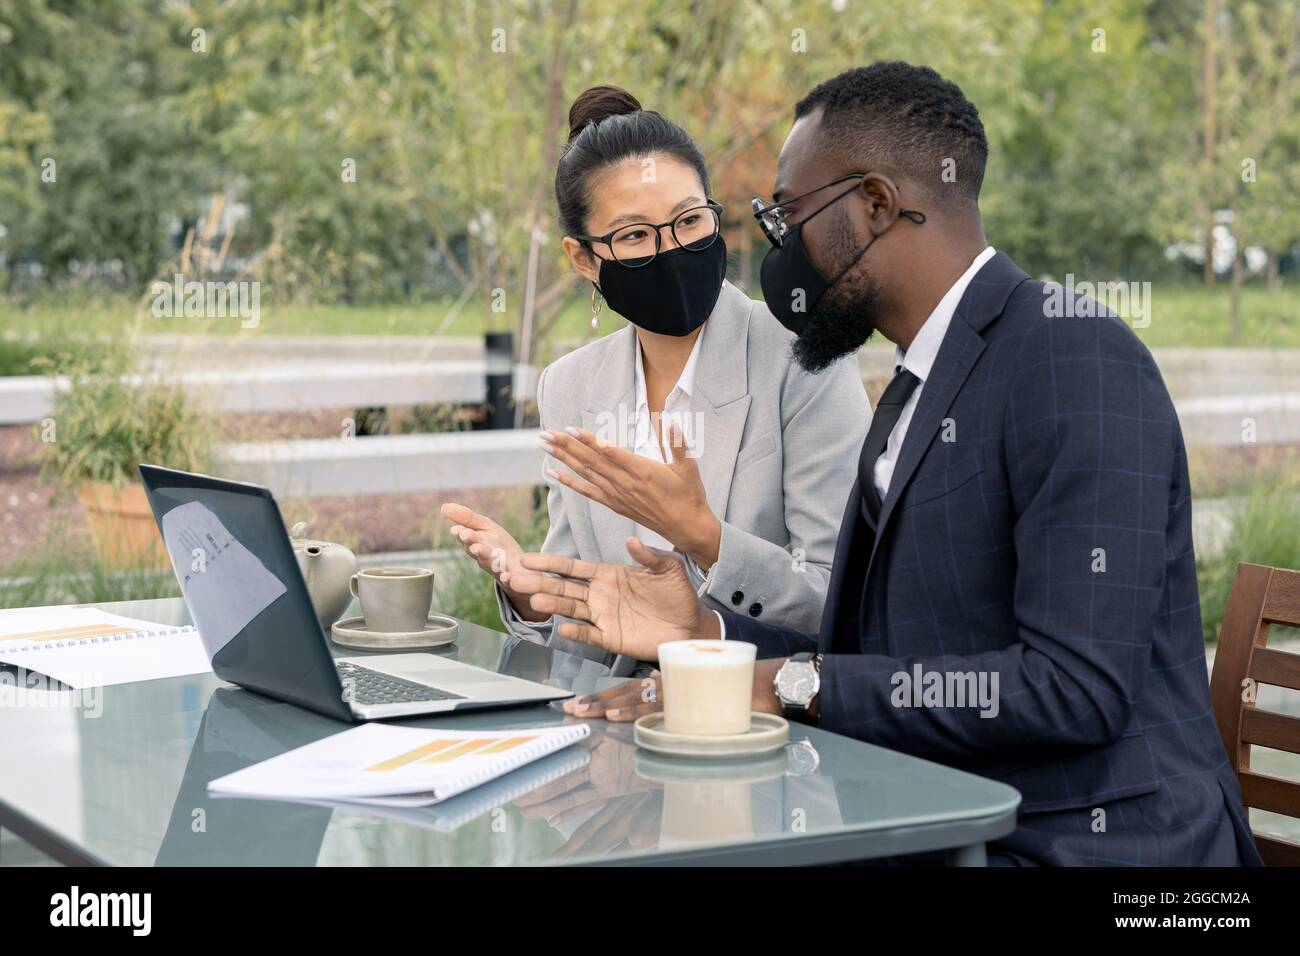 Dos trabajadores seguros de cuello blanco en ropa de formalwear y máscaras protectoras discutiendo un nuevo proyecto de negocio en café al aire libre Foto de stock